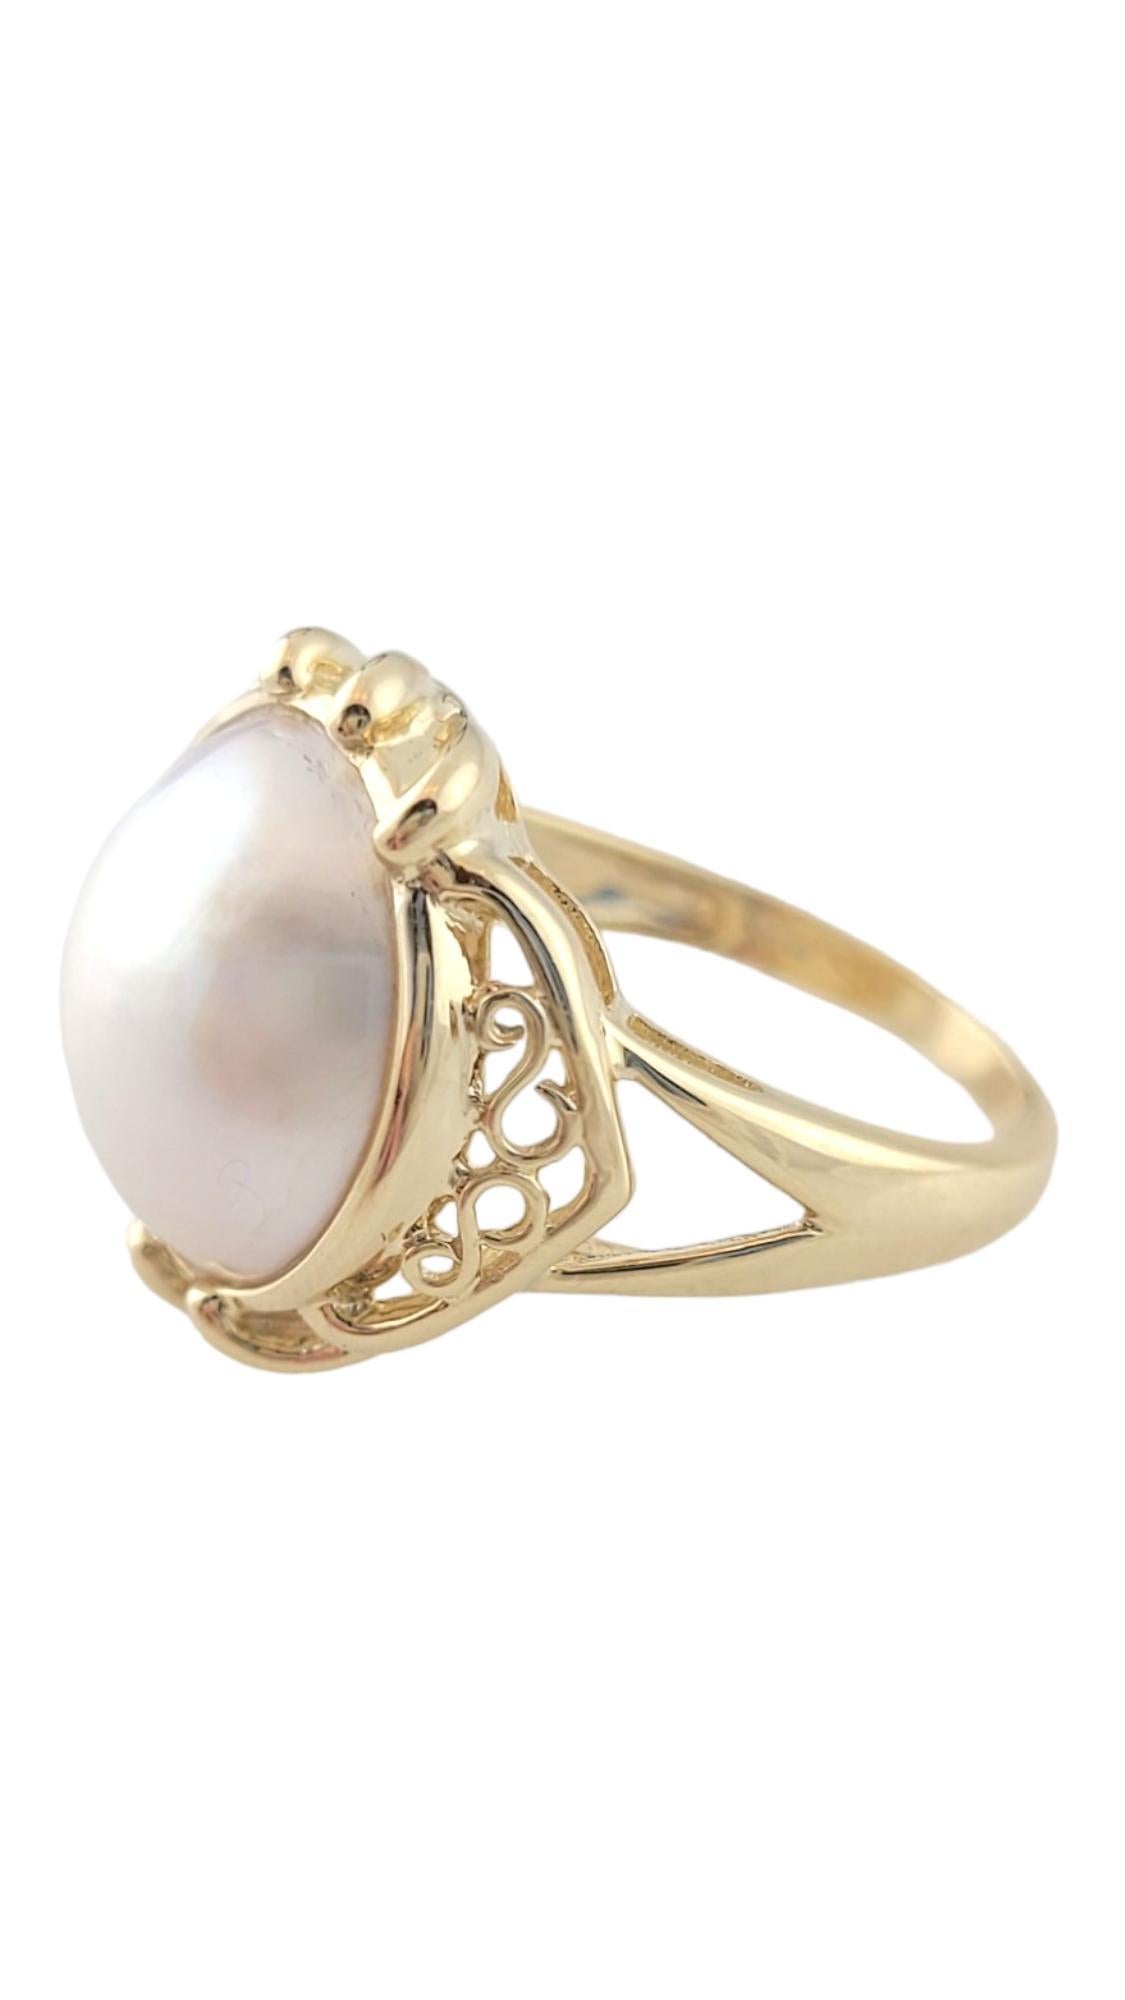 Vintage 14K Yellow Gold Mabe Pearl Ring size 6.25

Cette bague présente une magnifique perle Mabe sertie dans un anneau en or jaune 14 carats avec de superbes détails !

Perle : 12,89 mm

Taille de l'anneau : 6.25
Queue : 1.76mm
Avant : 17,03